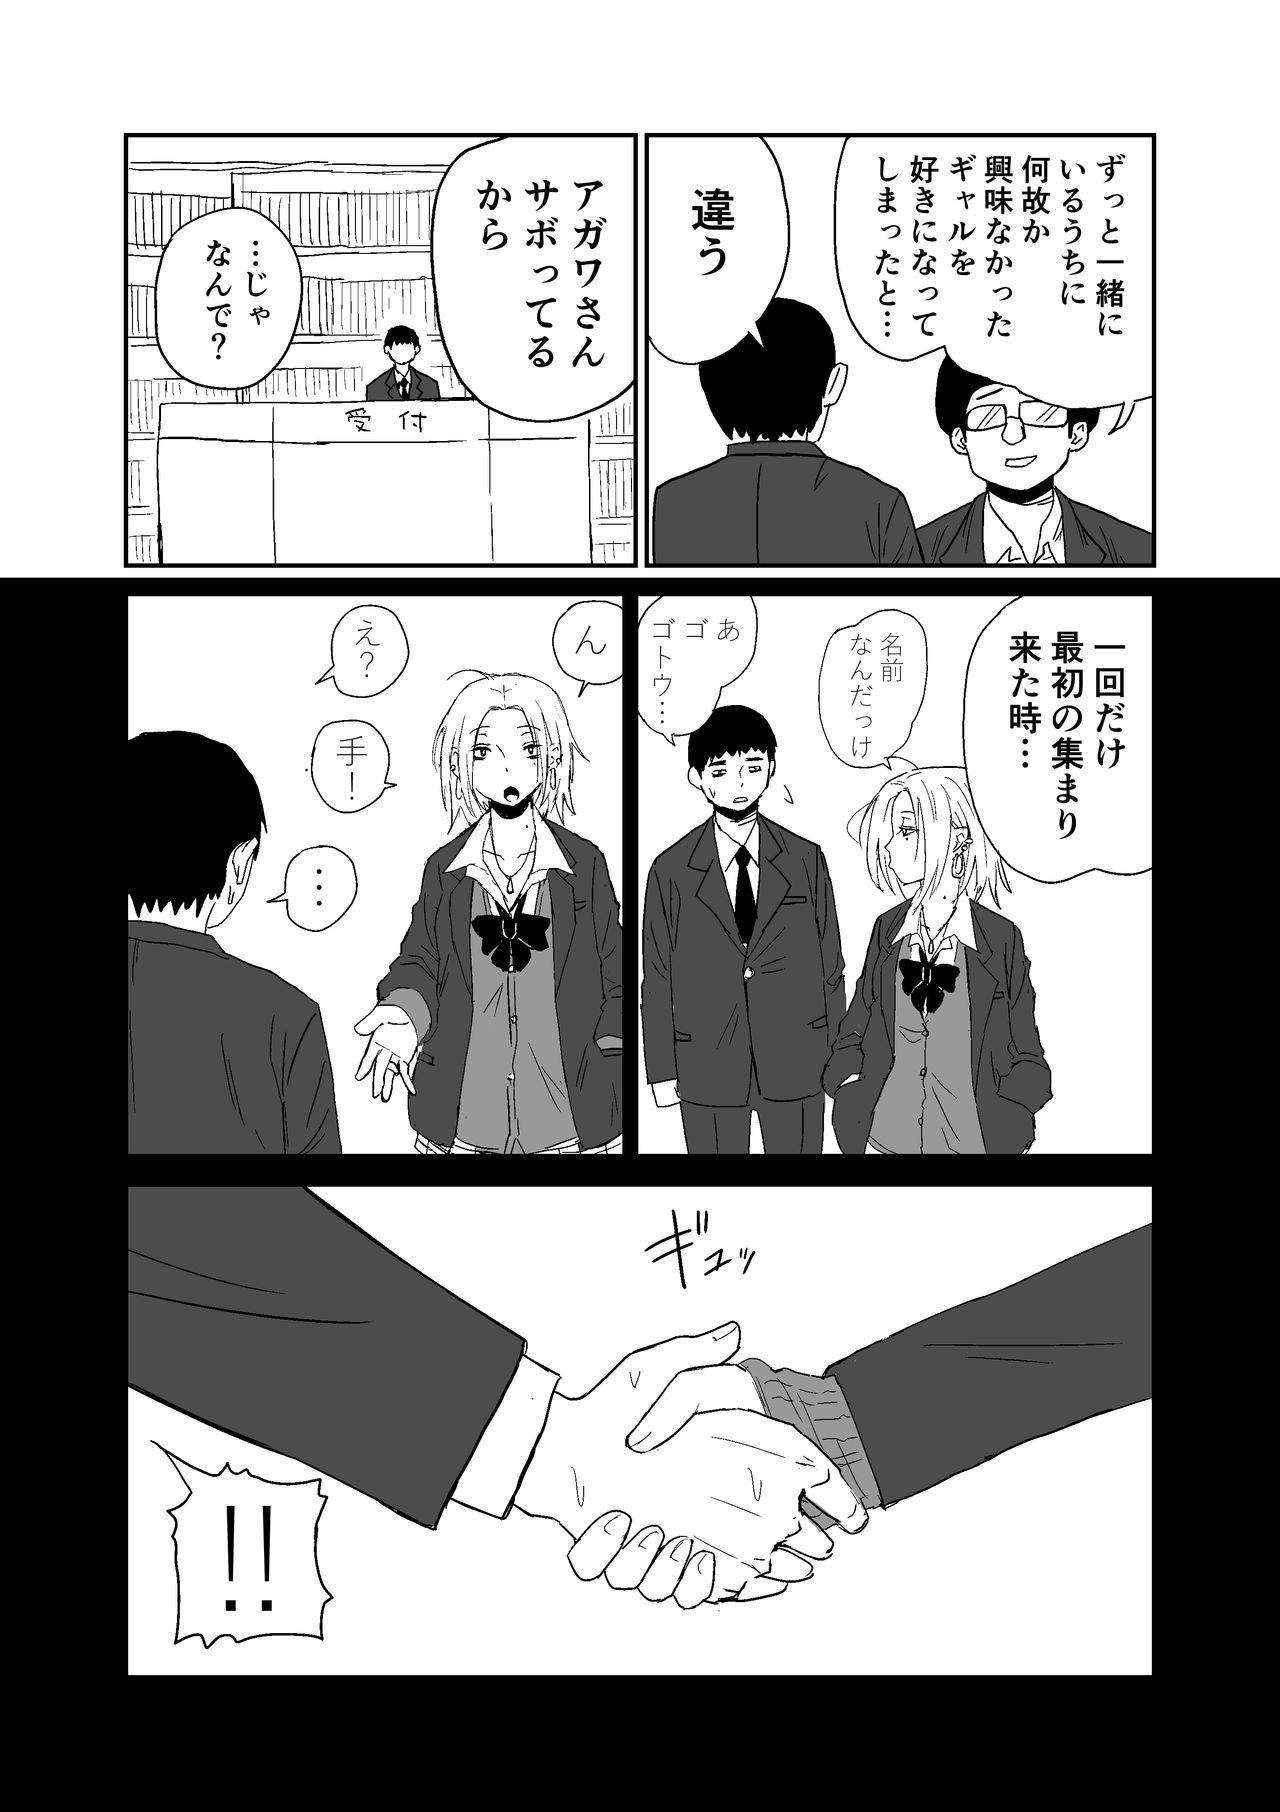 19yo 女子高生のエロ漫画 - Original Fucking - Page 4